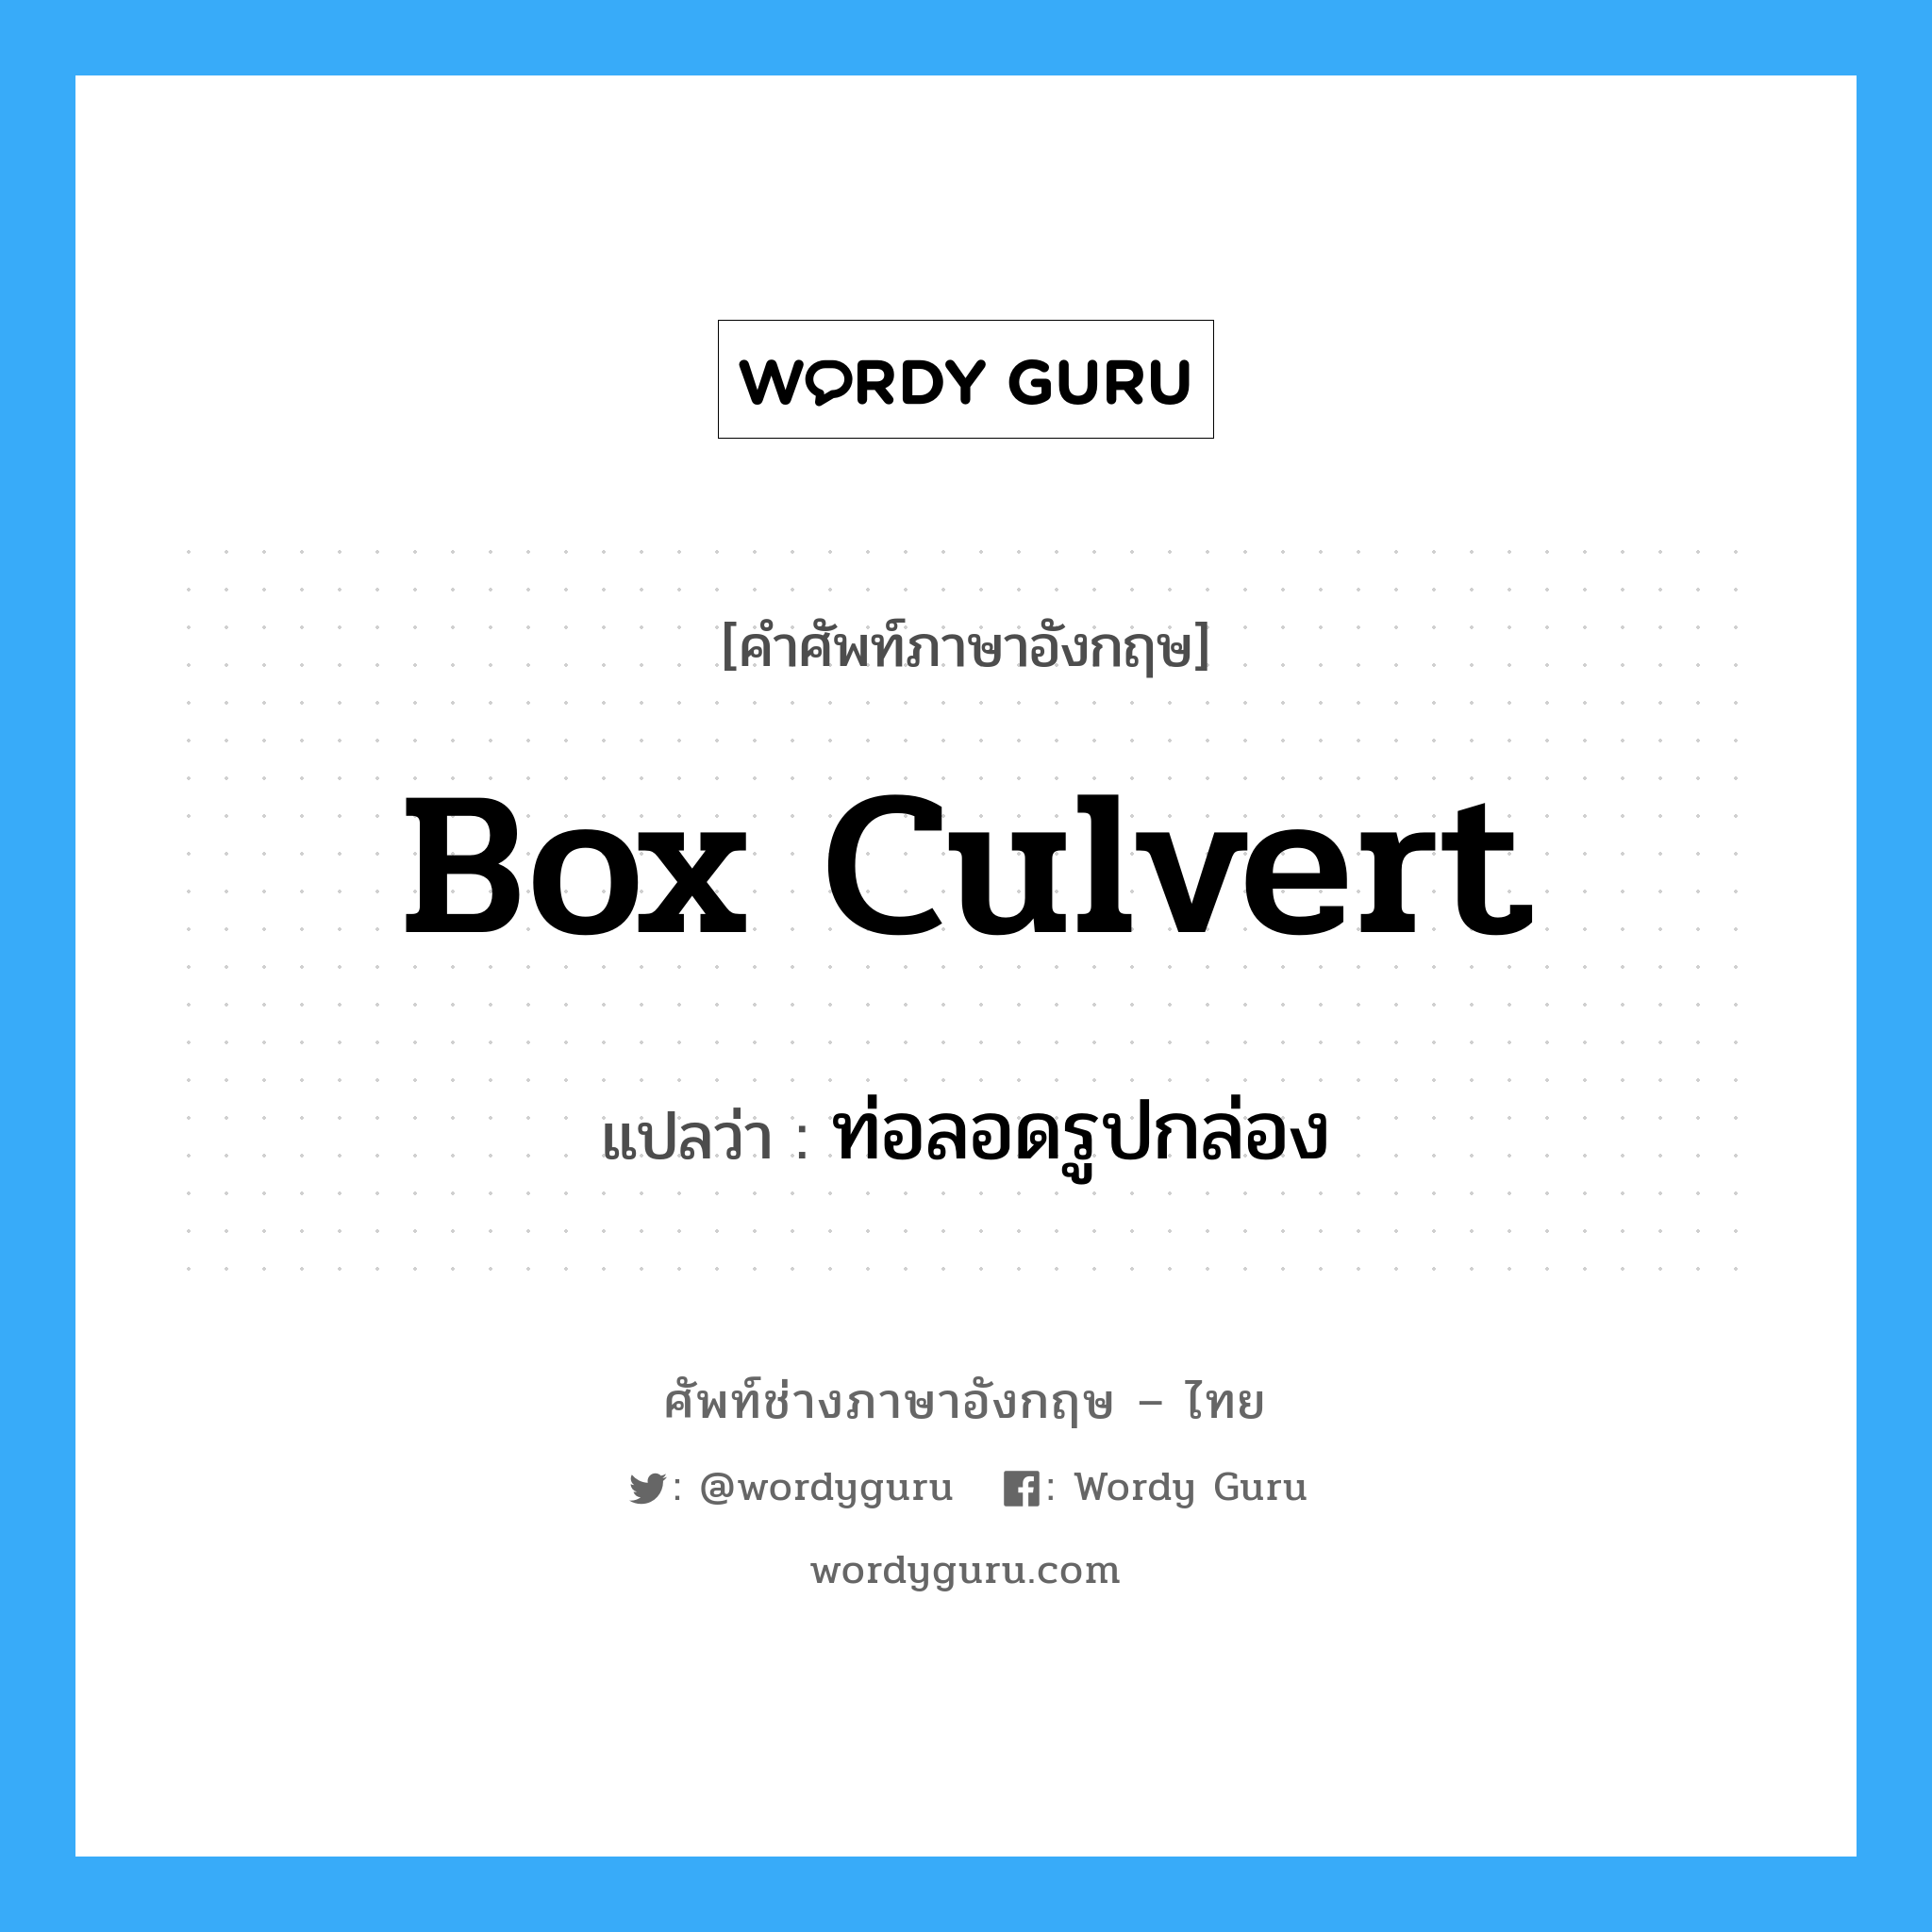 box culvert แปลว่า?, คำศัพท์ช่างภาษาอังกฤษ - ไทย box culvert คำศัพท์ภาษาอังกฤษ box culvert แปลว่า ท่อลอดรูปกล่อง